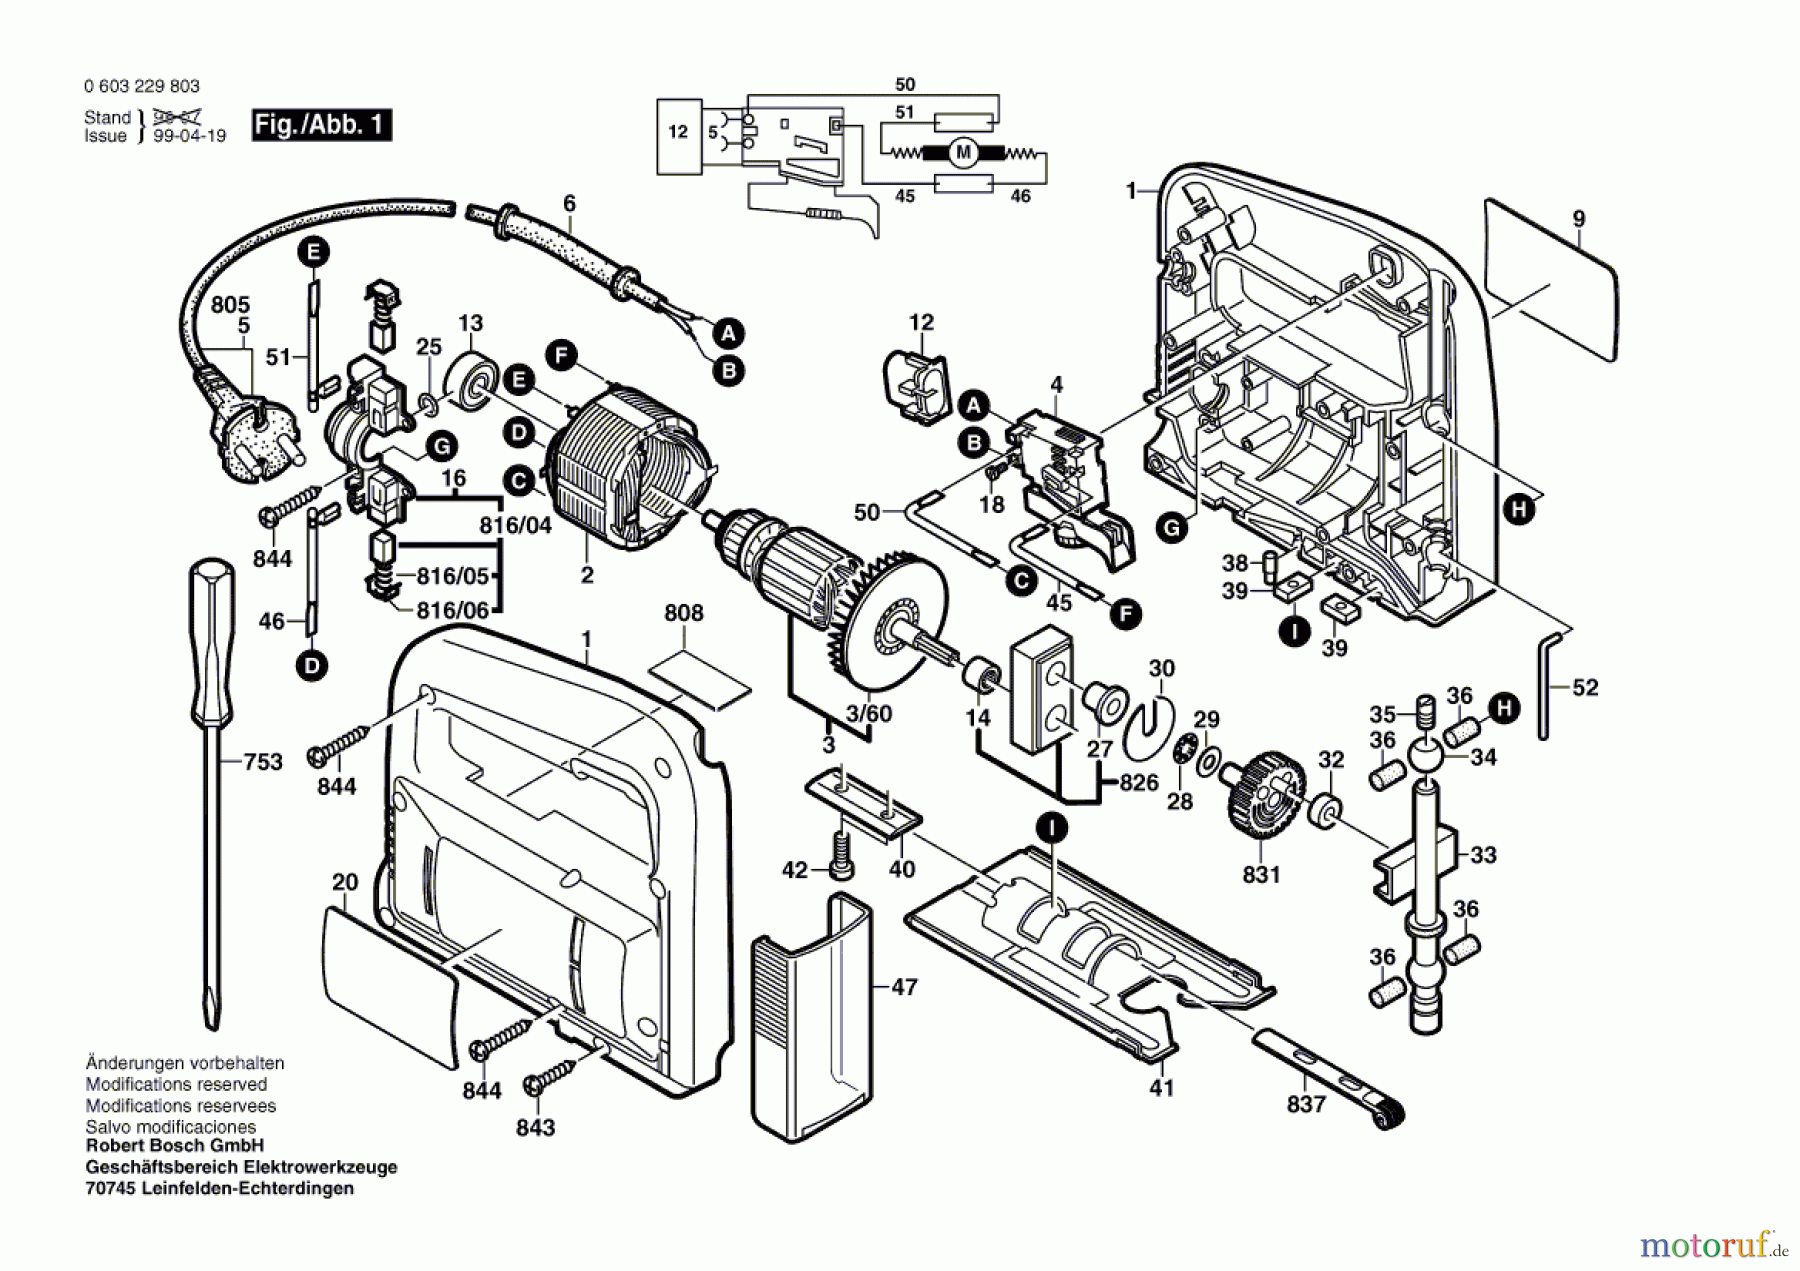  Bosch Werkzeug Stichsäge PST 53 AE Seite 1